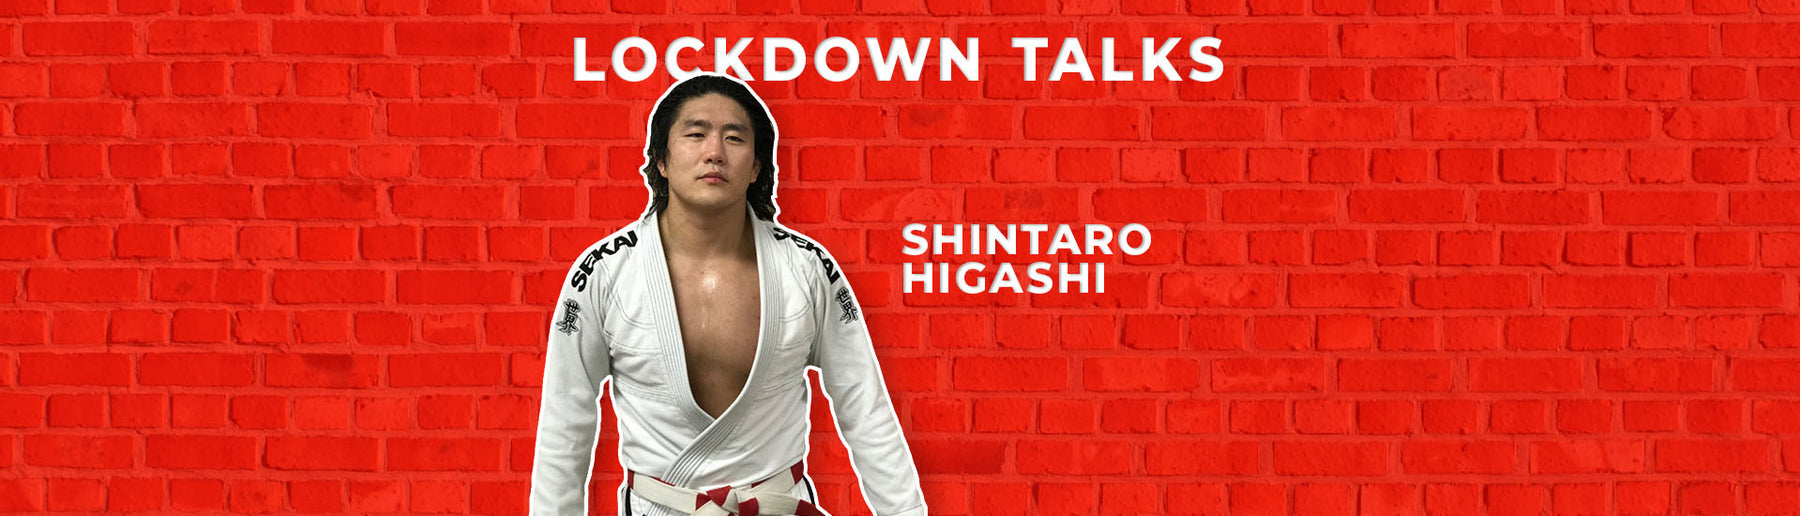 Judo for BJJ | Shintaro Higashi interview